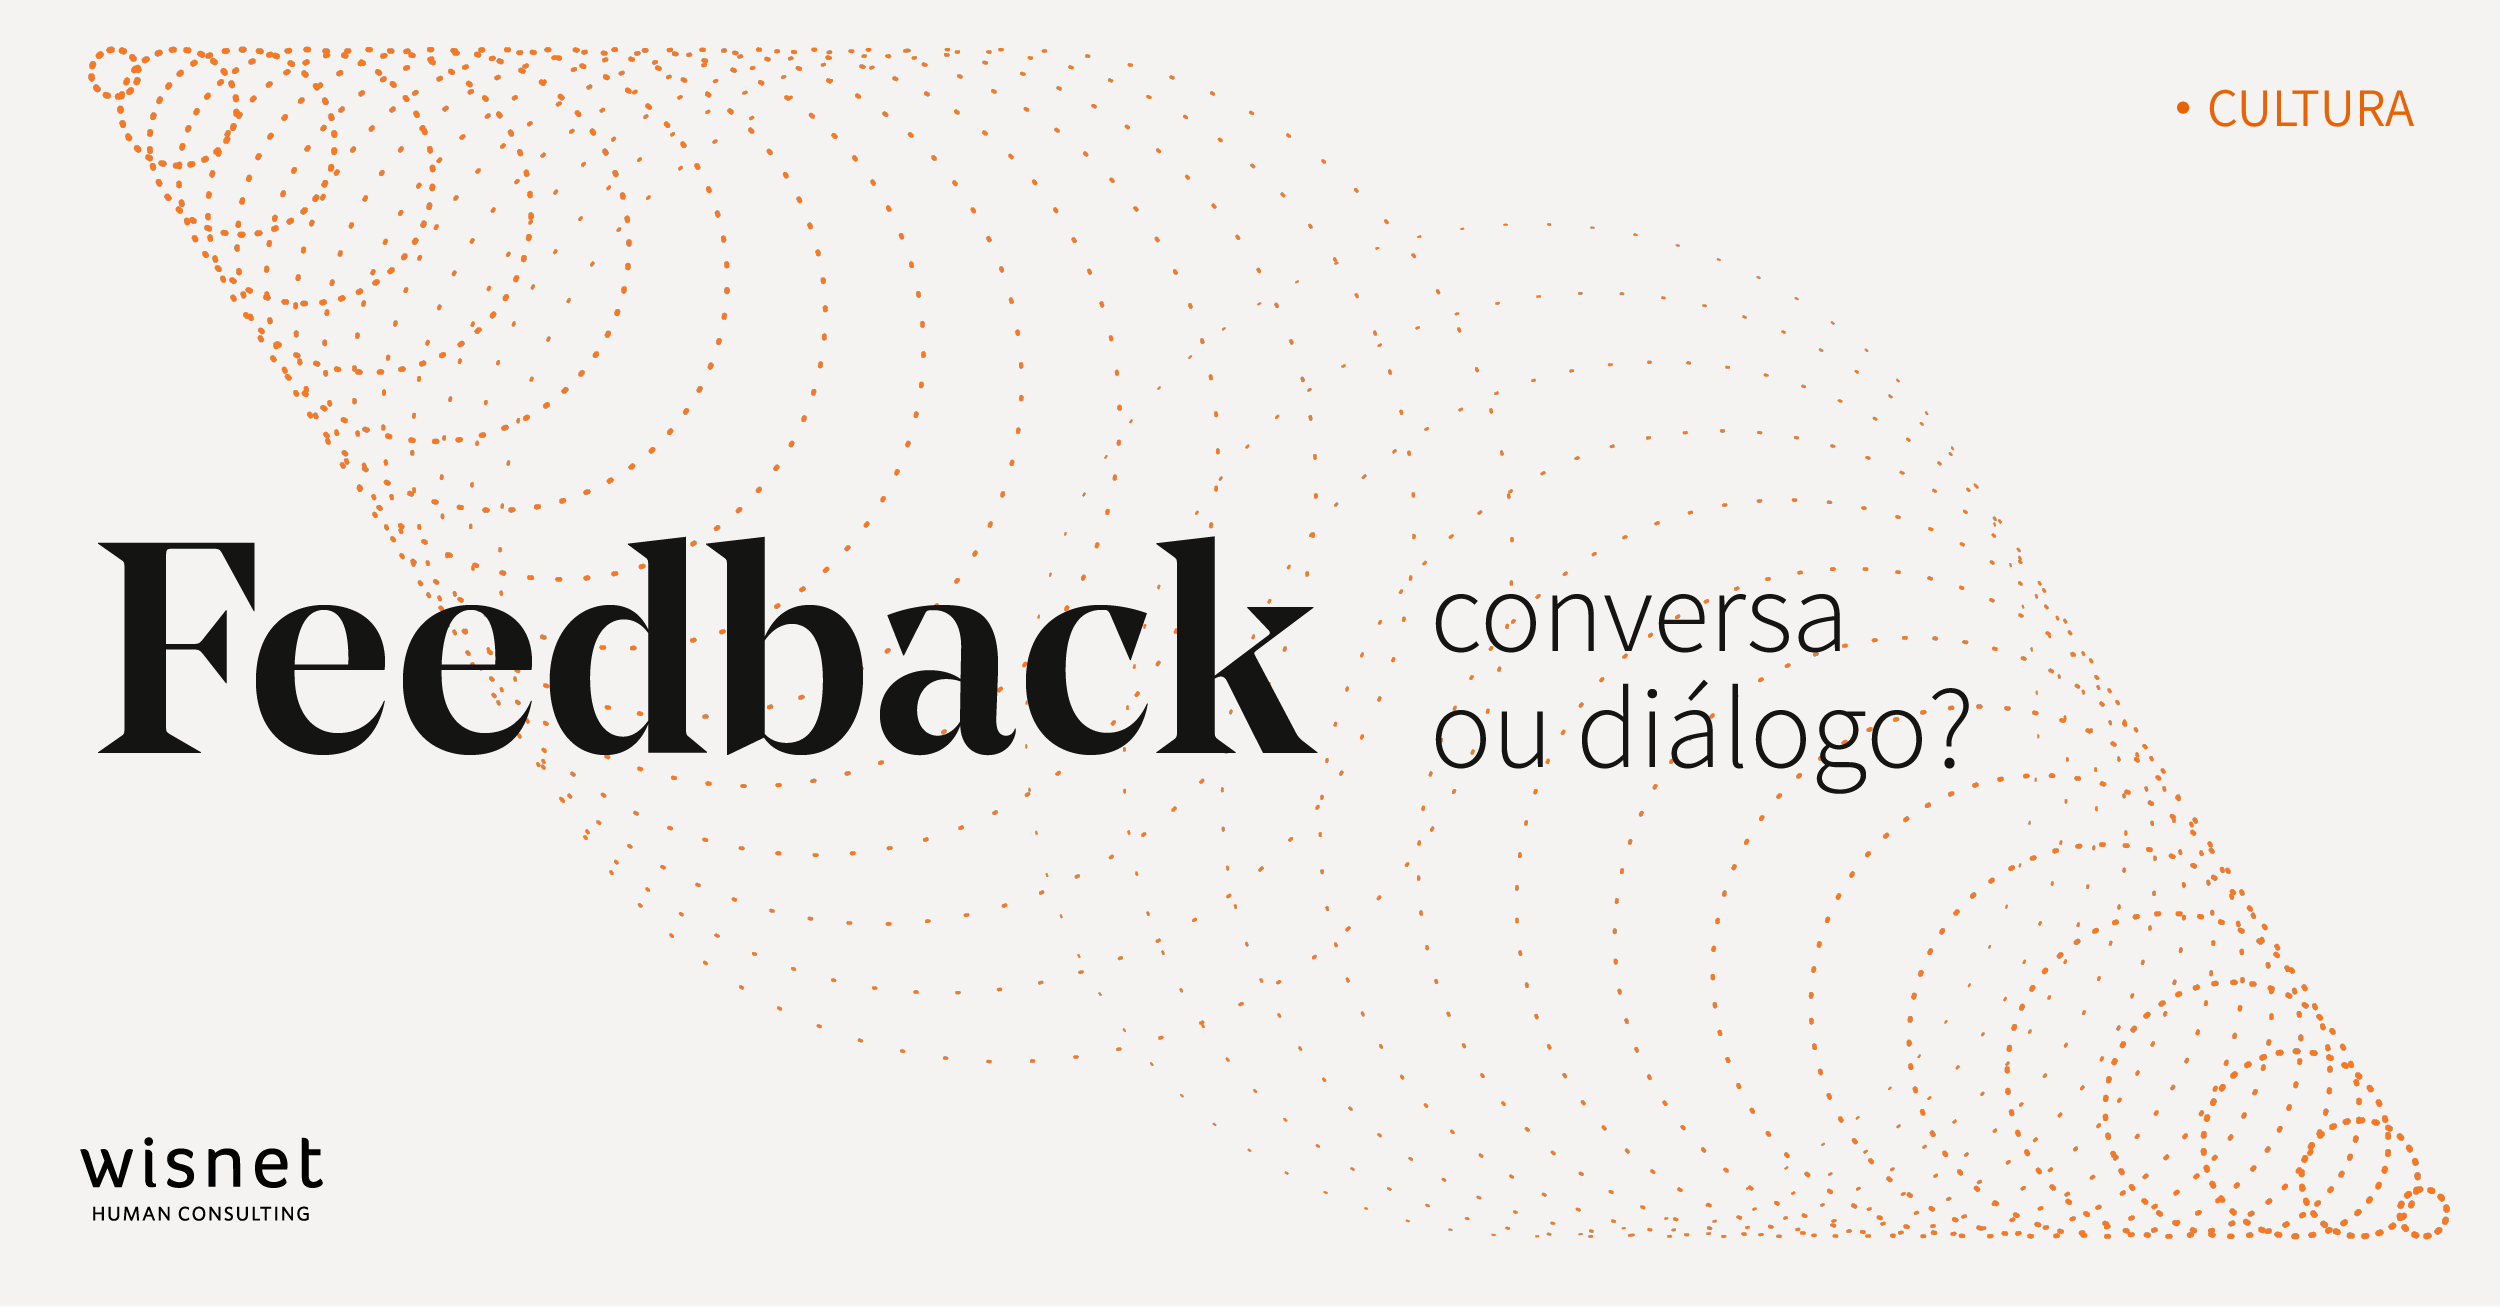 Feedback é conversa, mas pode ser diálogo